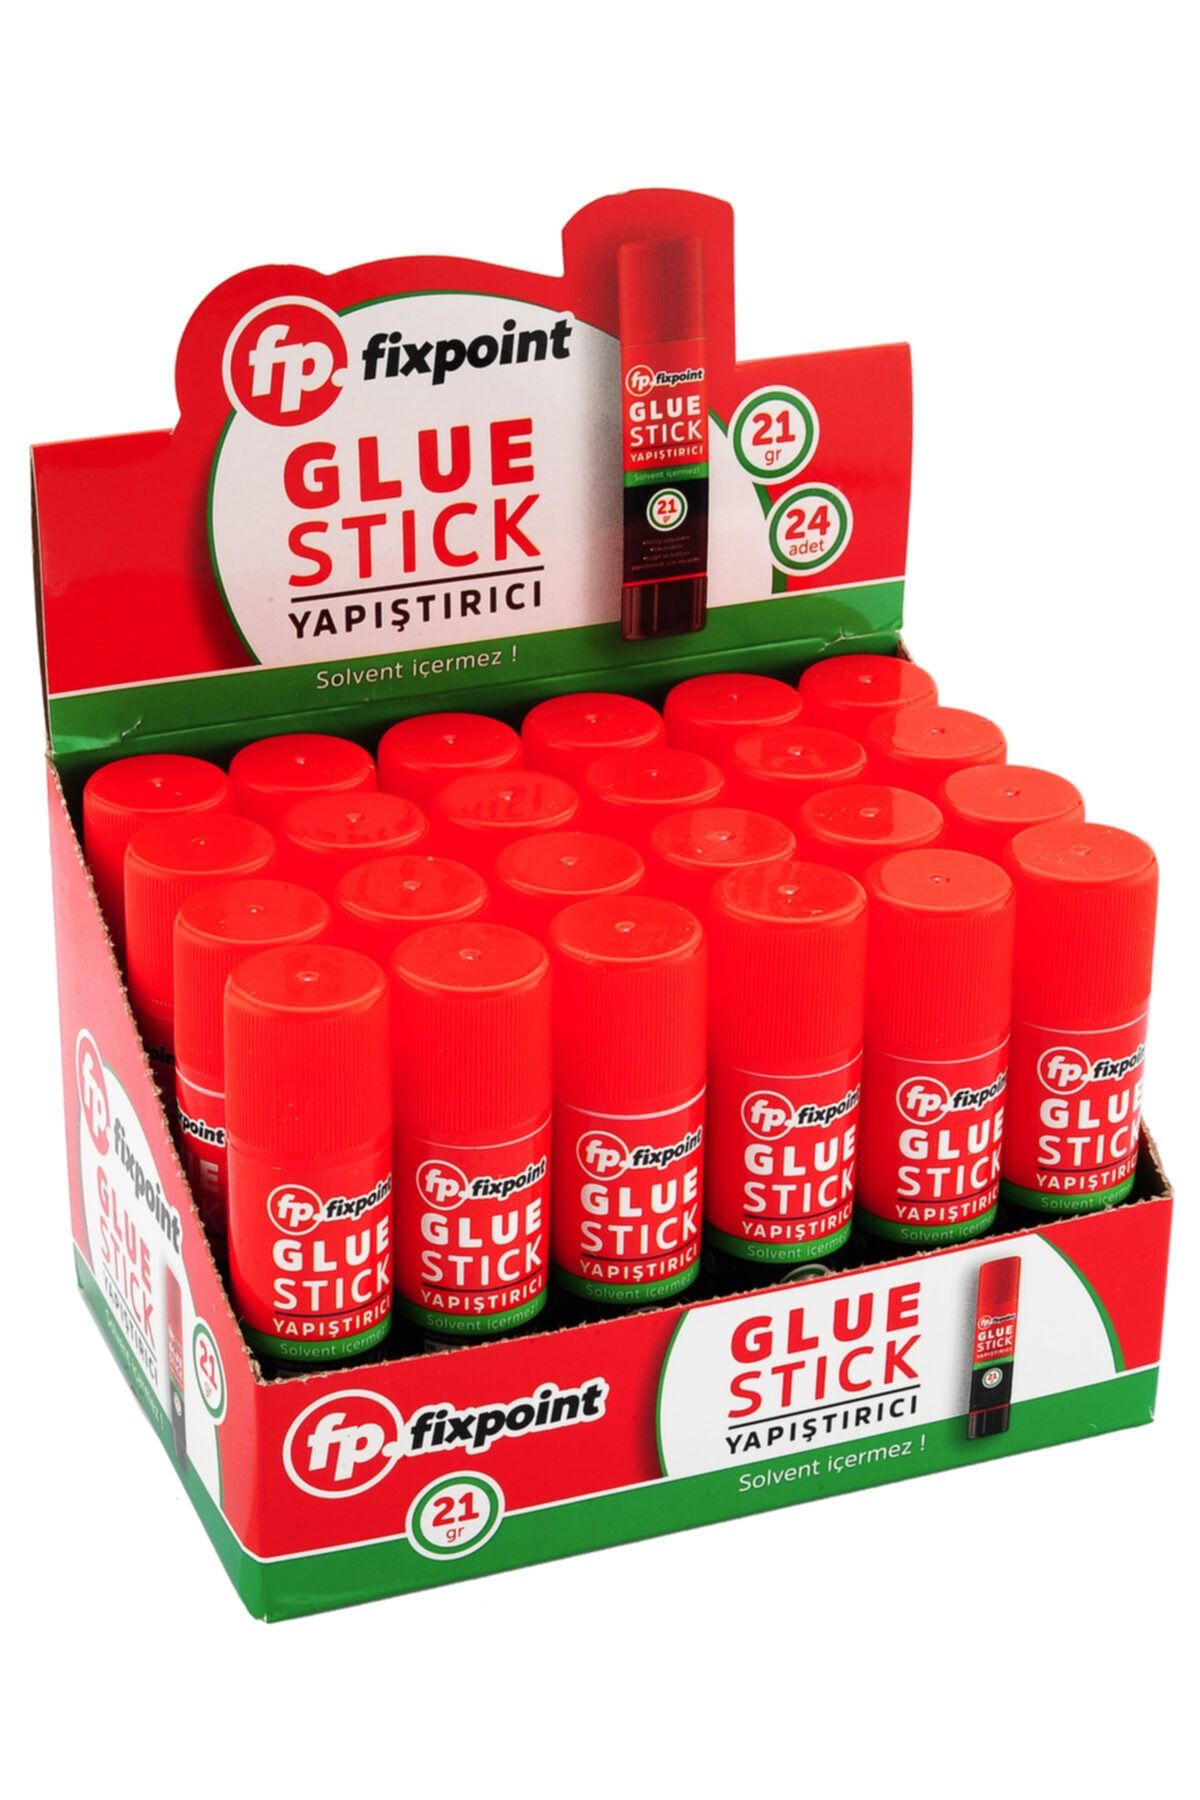 FixPoint Glue Stick Yapıştırıcı 21gr, 24'lü Paket Satış